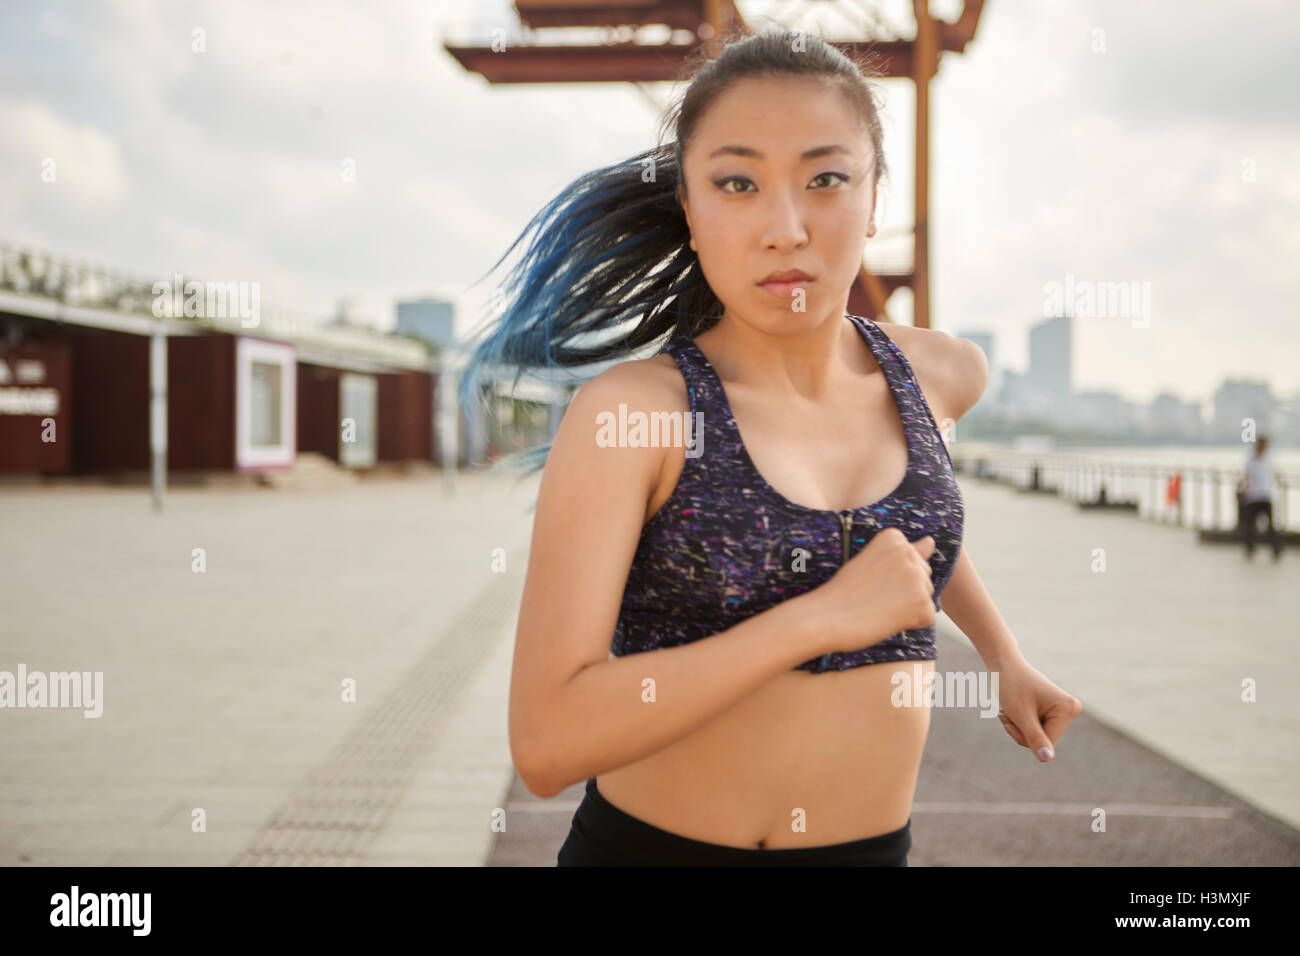 Woman jogging looking at camera, South Bund, Shanghai, China Stock Photo